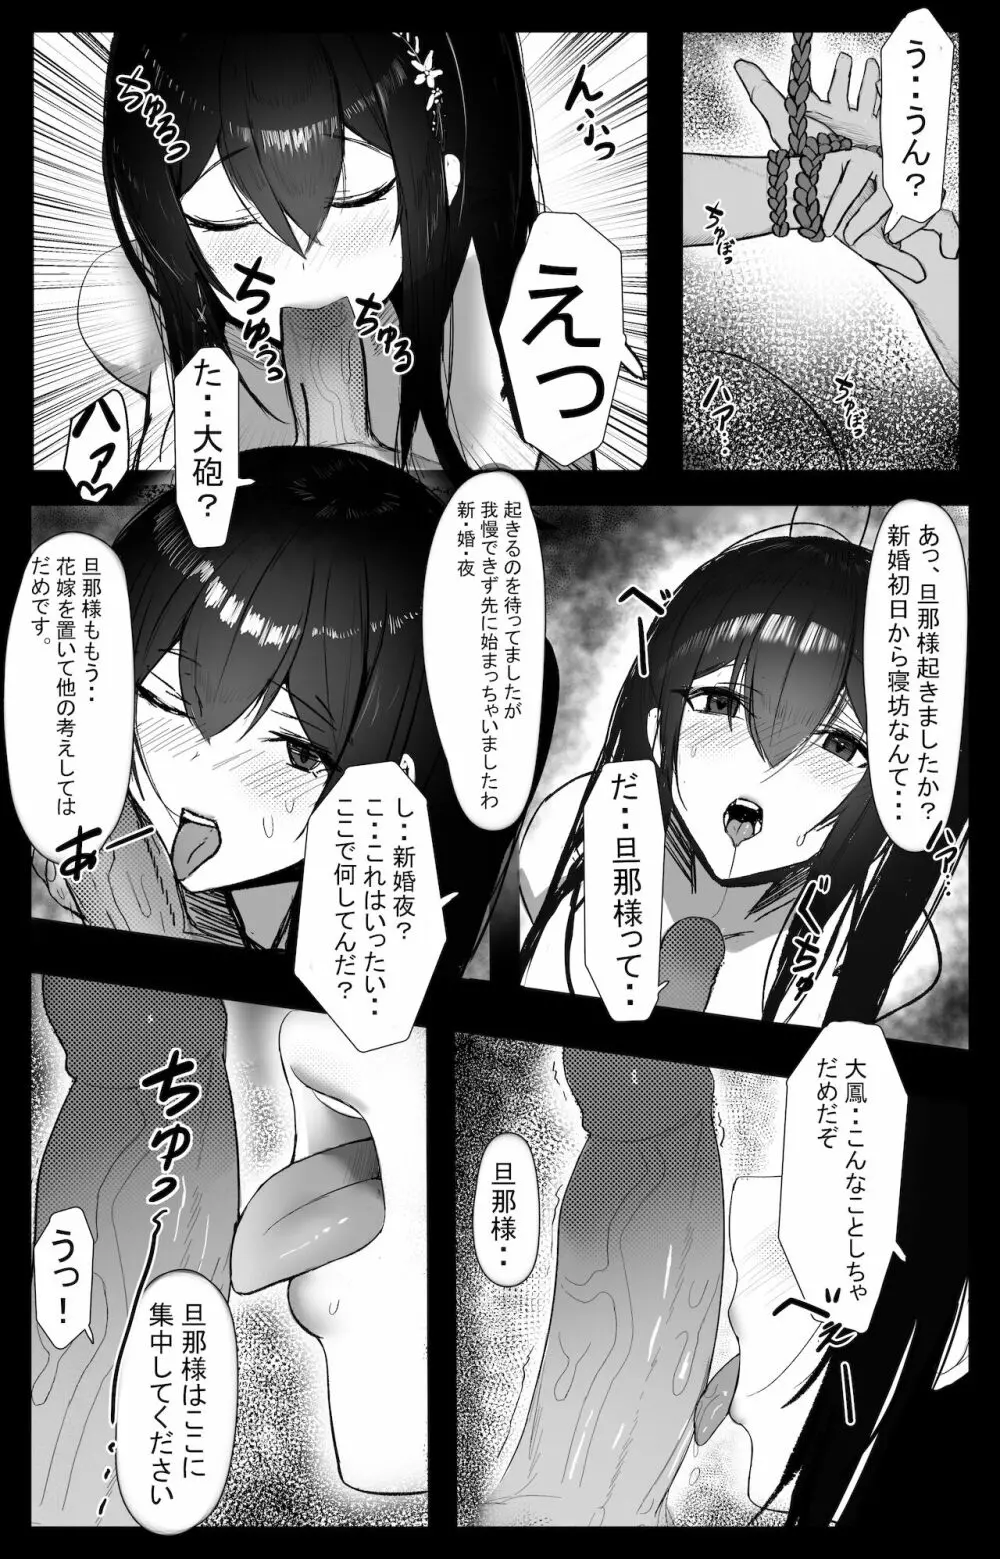 November 2021 - Azur lane 大鳳 Manga Page.2